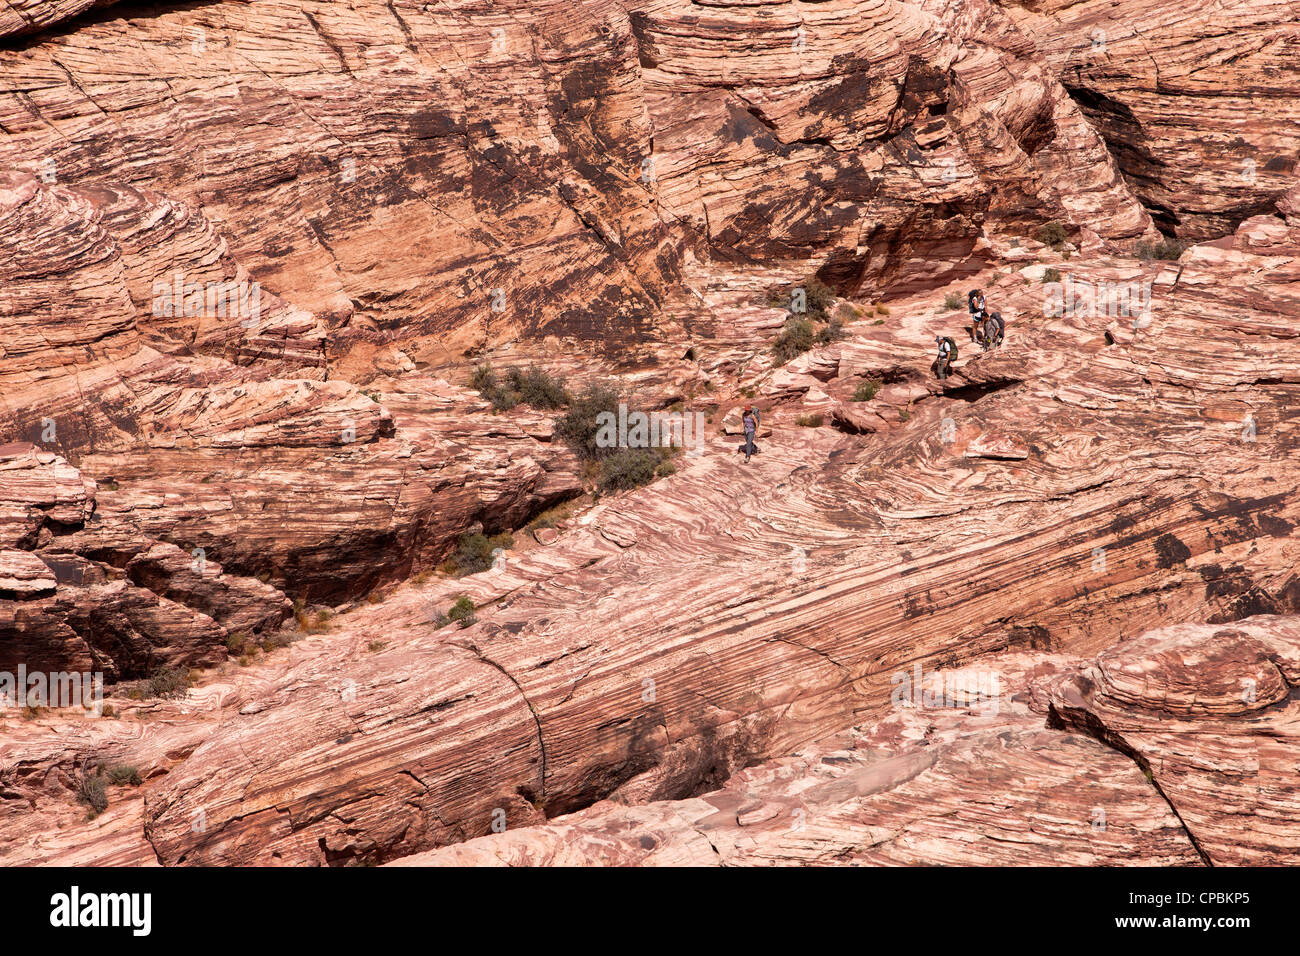 Calico Berg in Red Rock Naturschutzgebiet nördlich von Las Vegas Nevada.  Sandstein-Formationen in der Wüste. Foto neu zu entfachen. Stockfoto